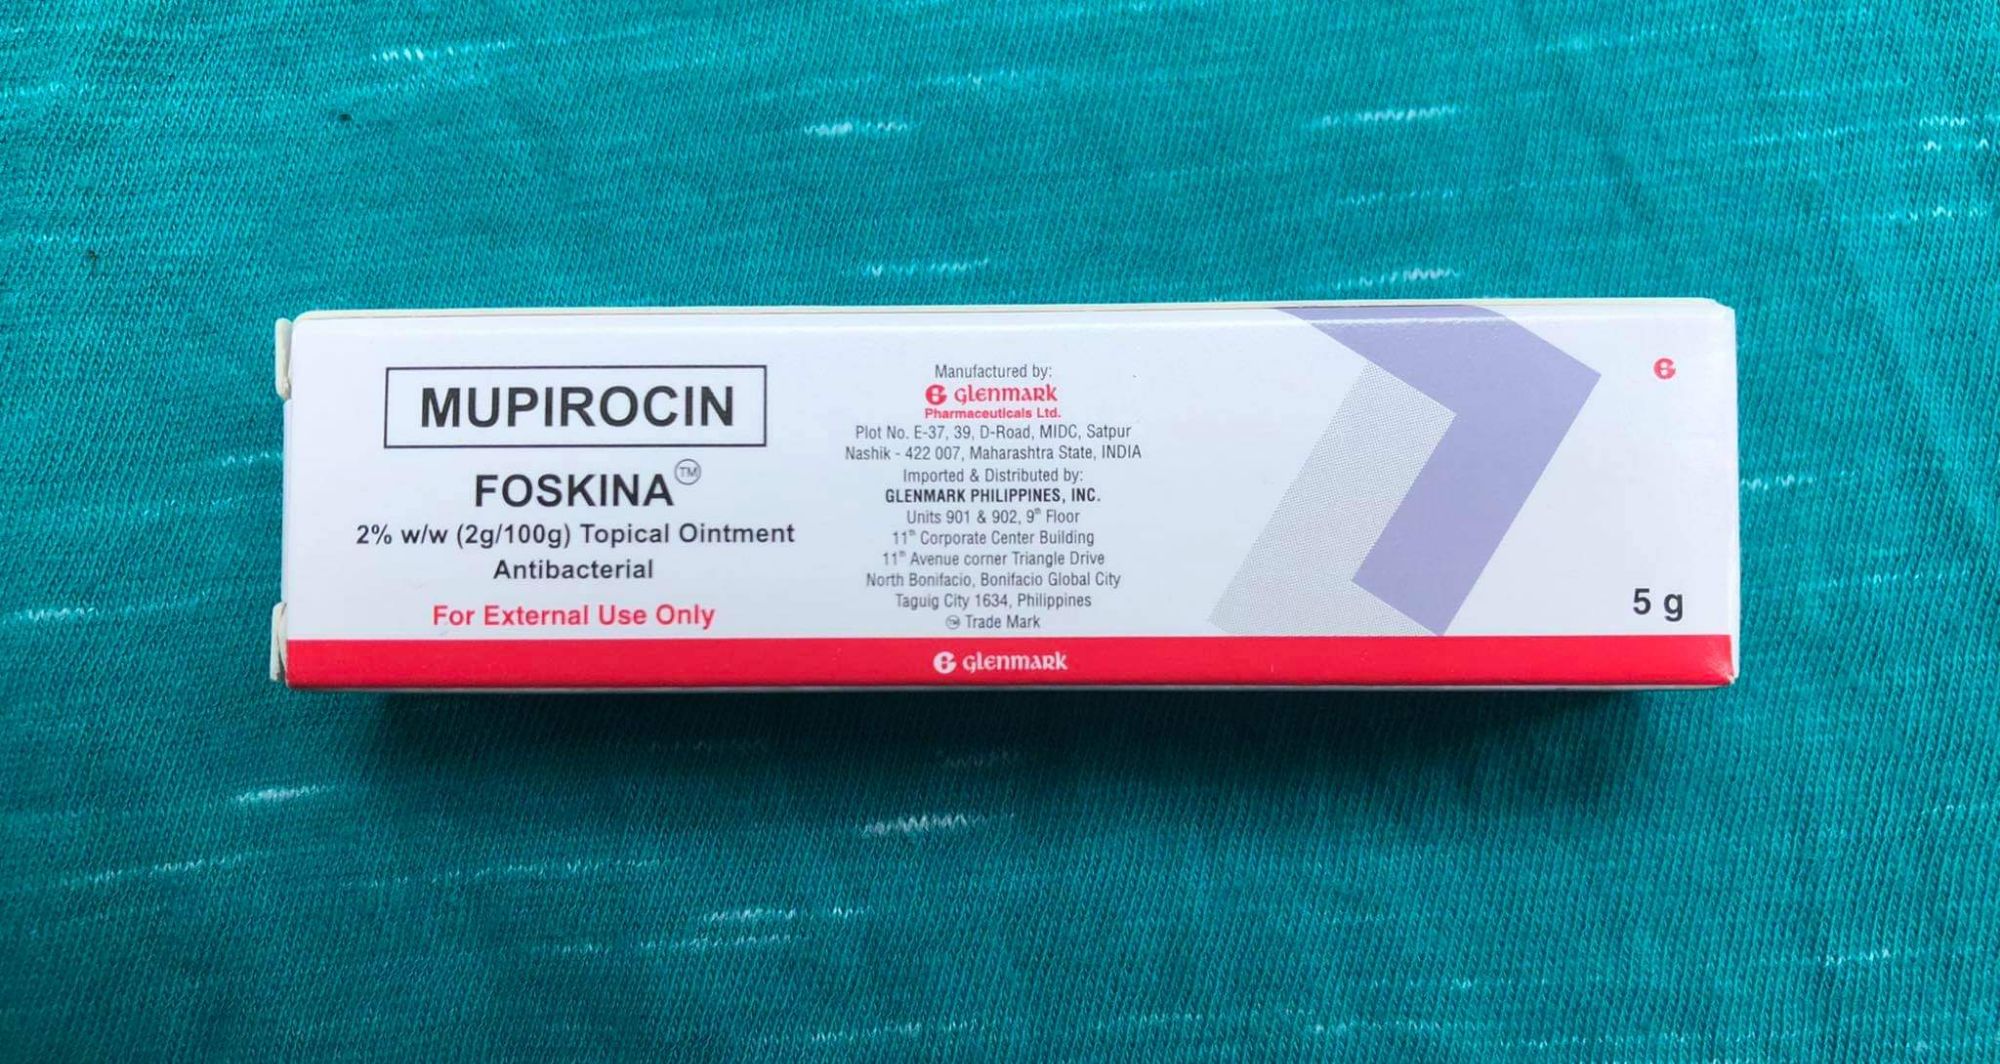 Mupirocin 5g Topical Ointment